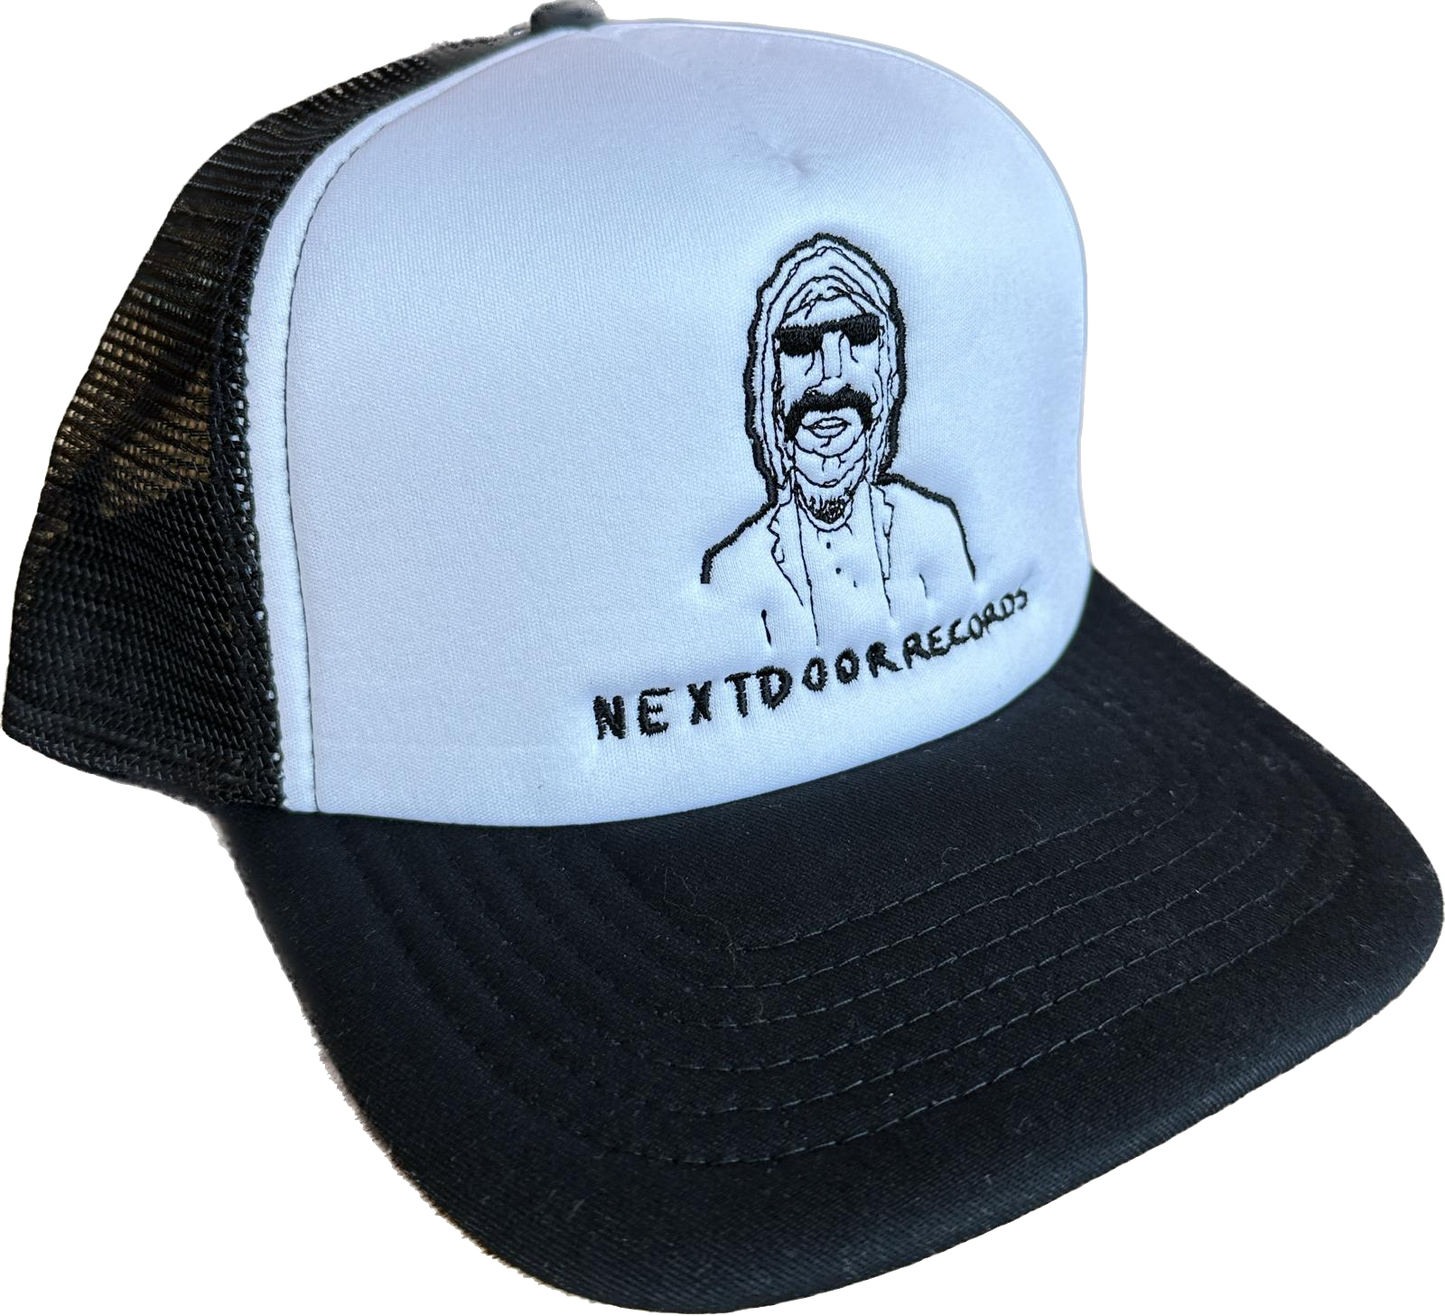 Next Door Records Trucker Cap